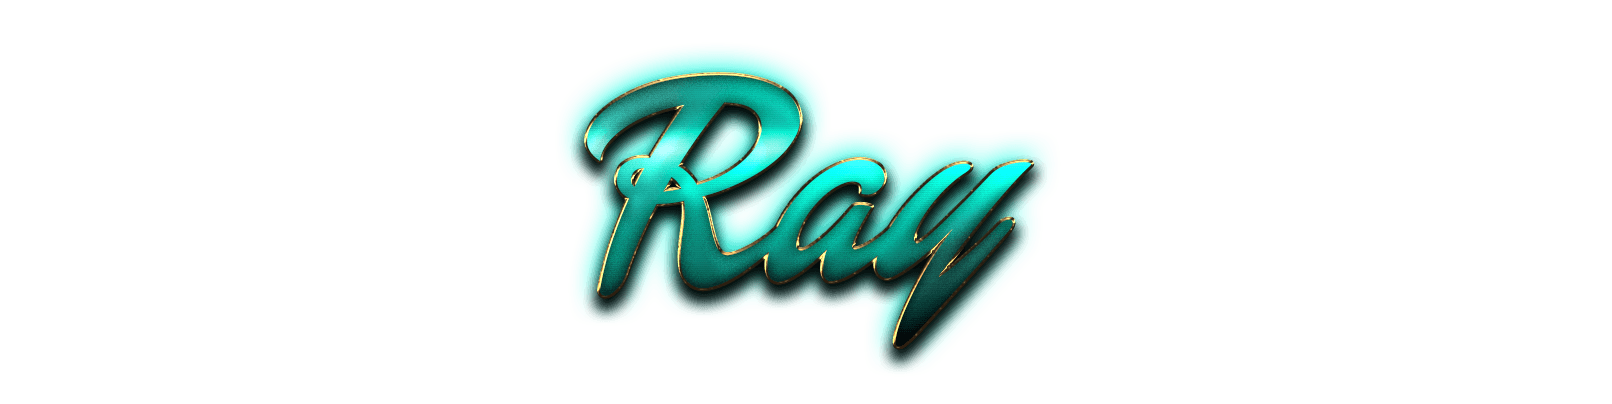 Ray Logo - Ray Name Logo PNG